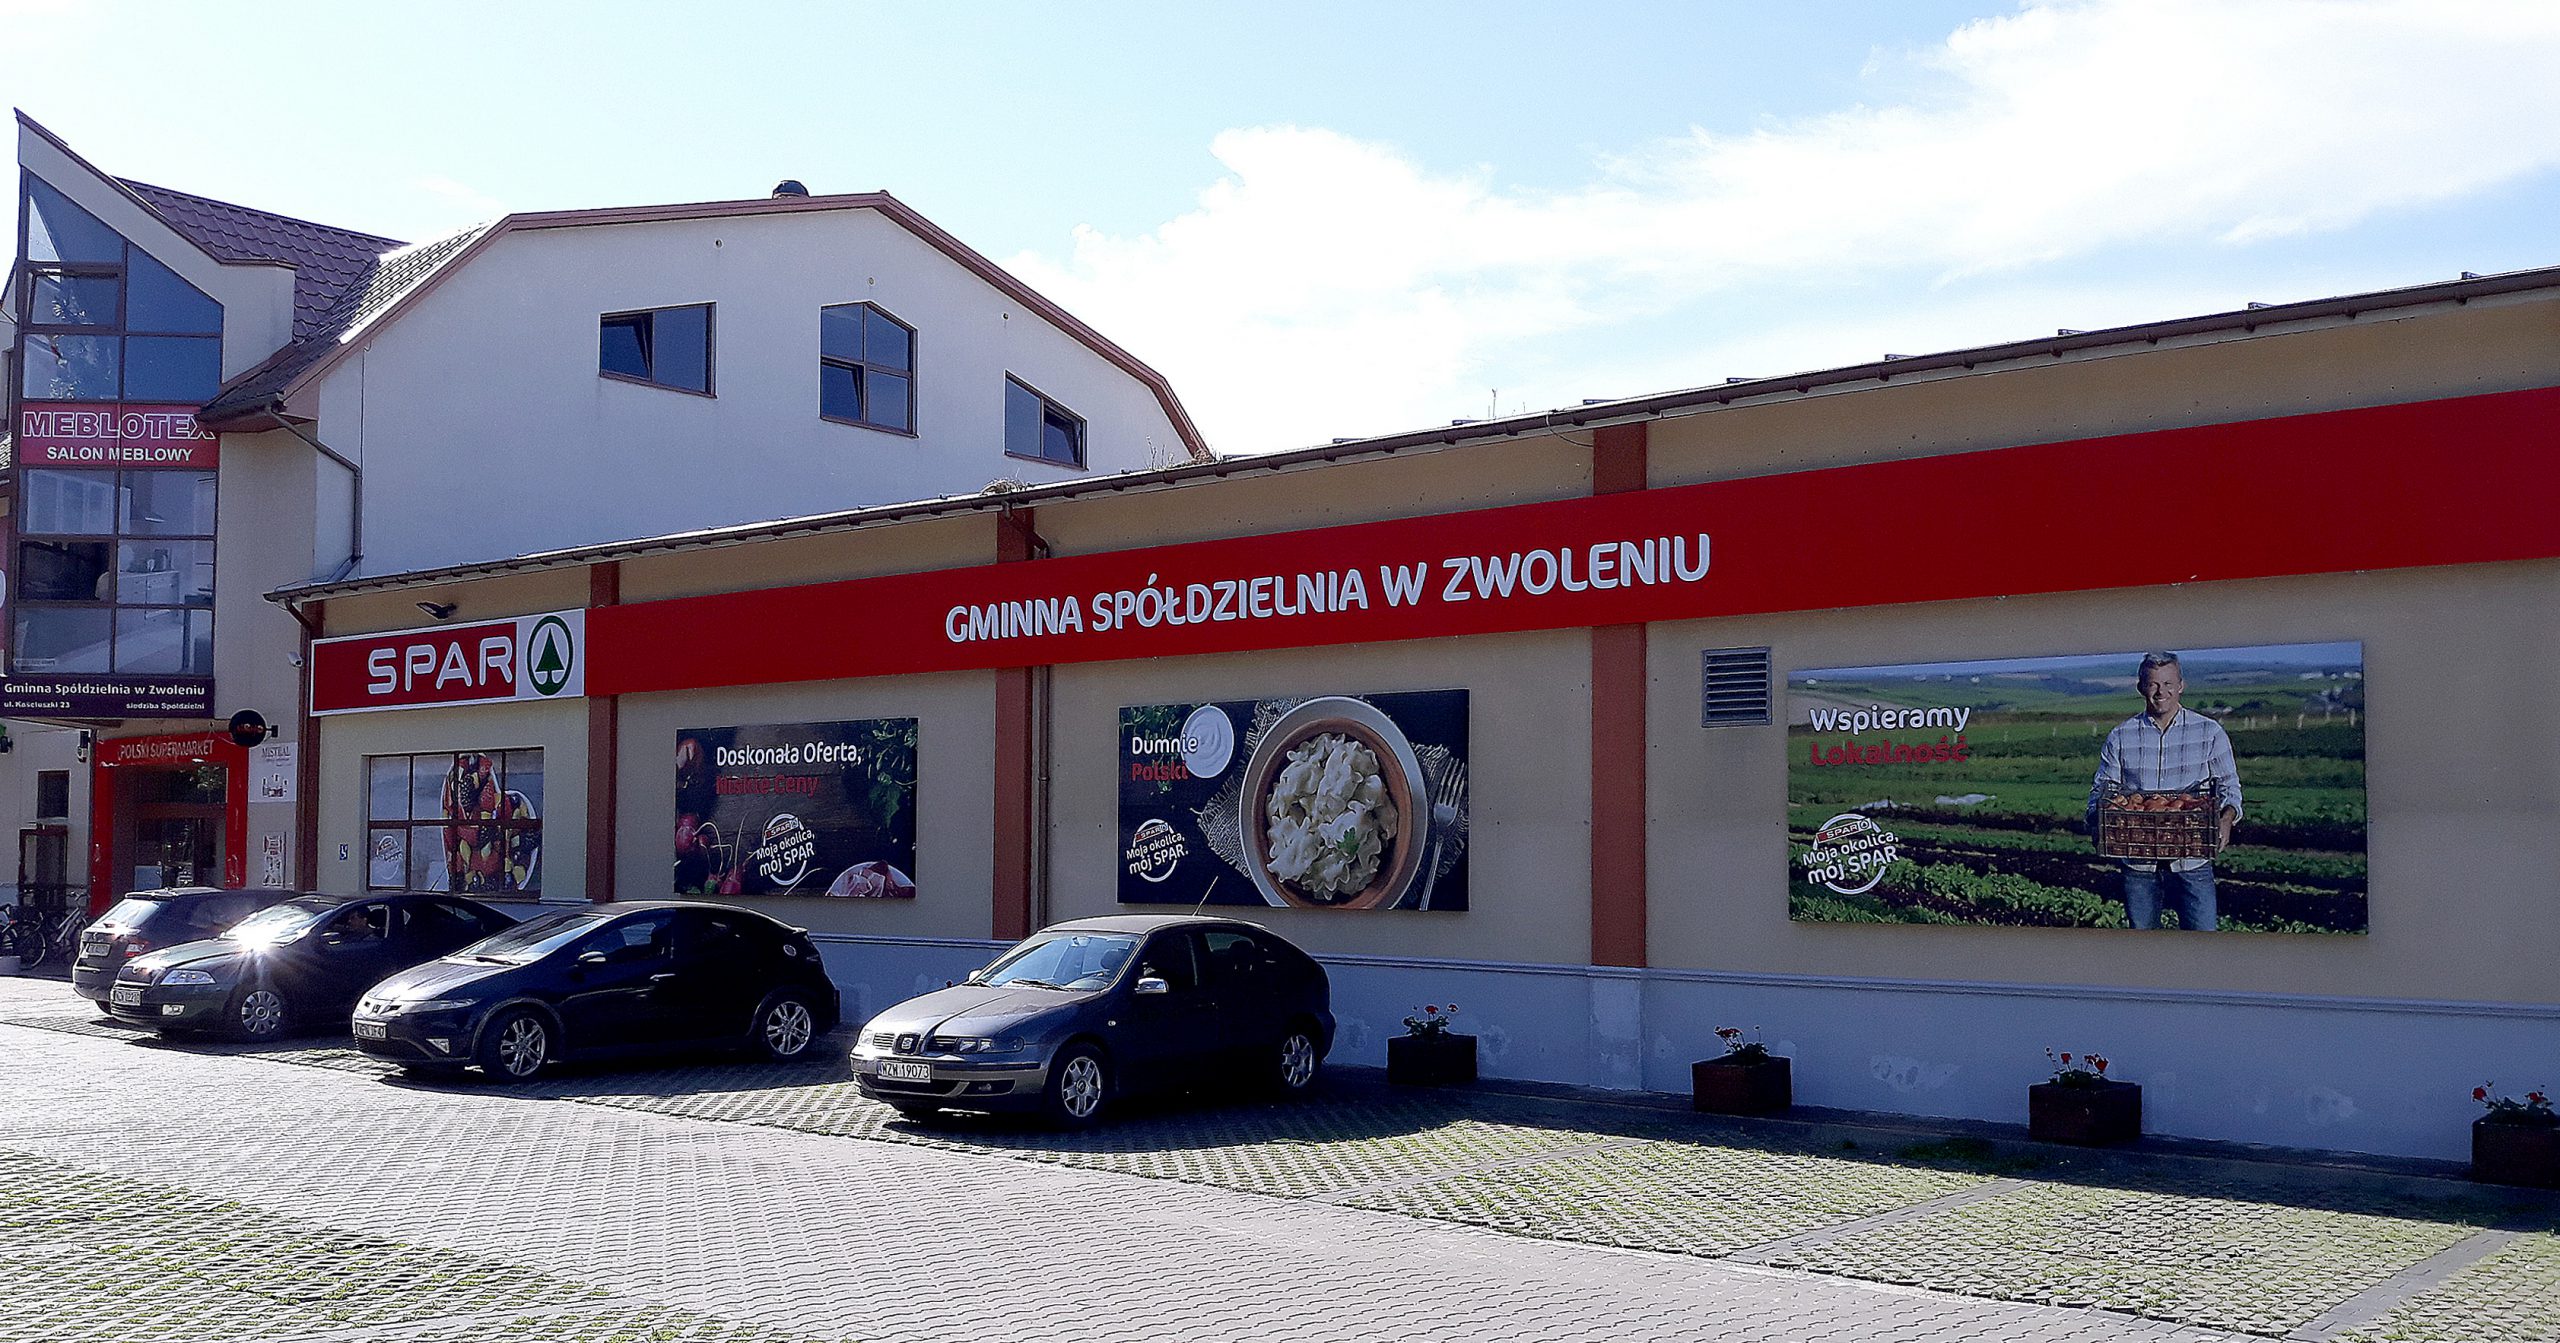 SPAR Polska otwiera duży supermarket w Zwoleniu